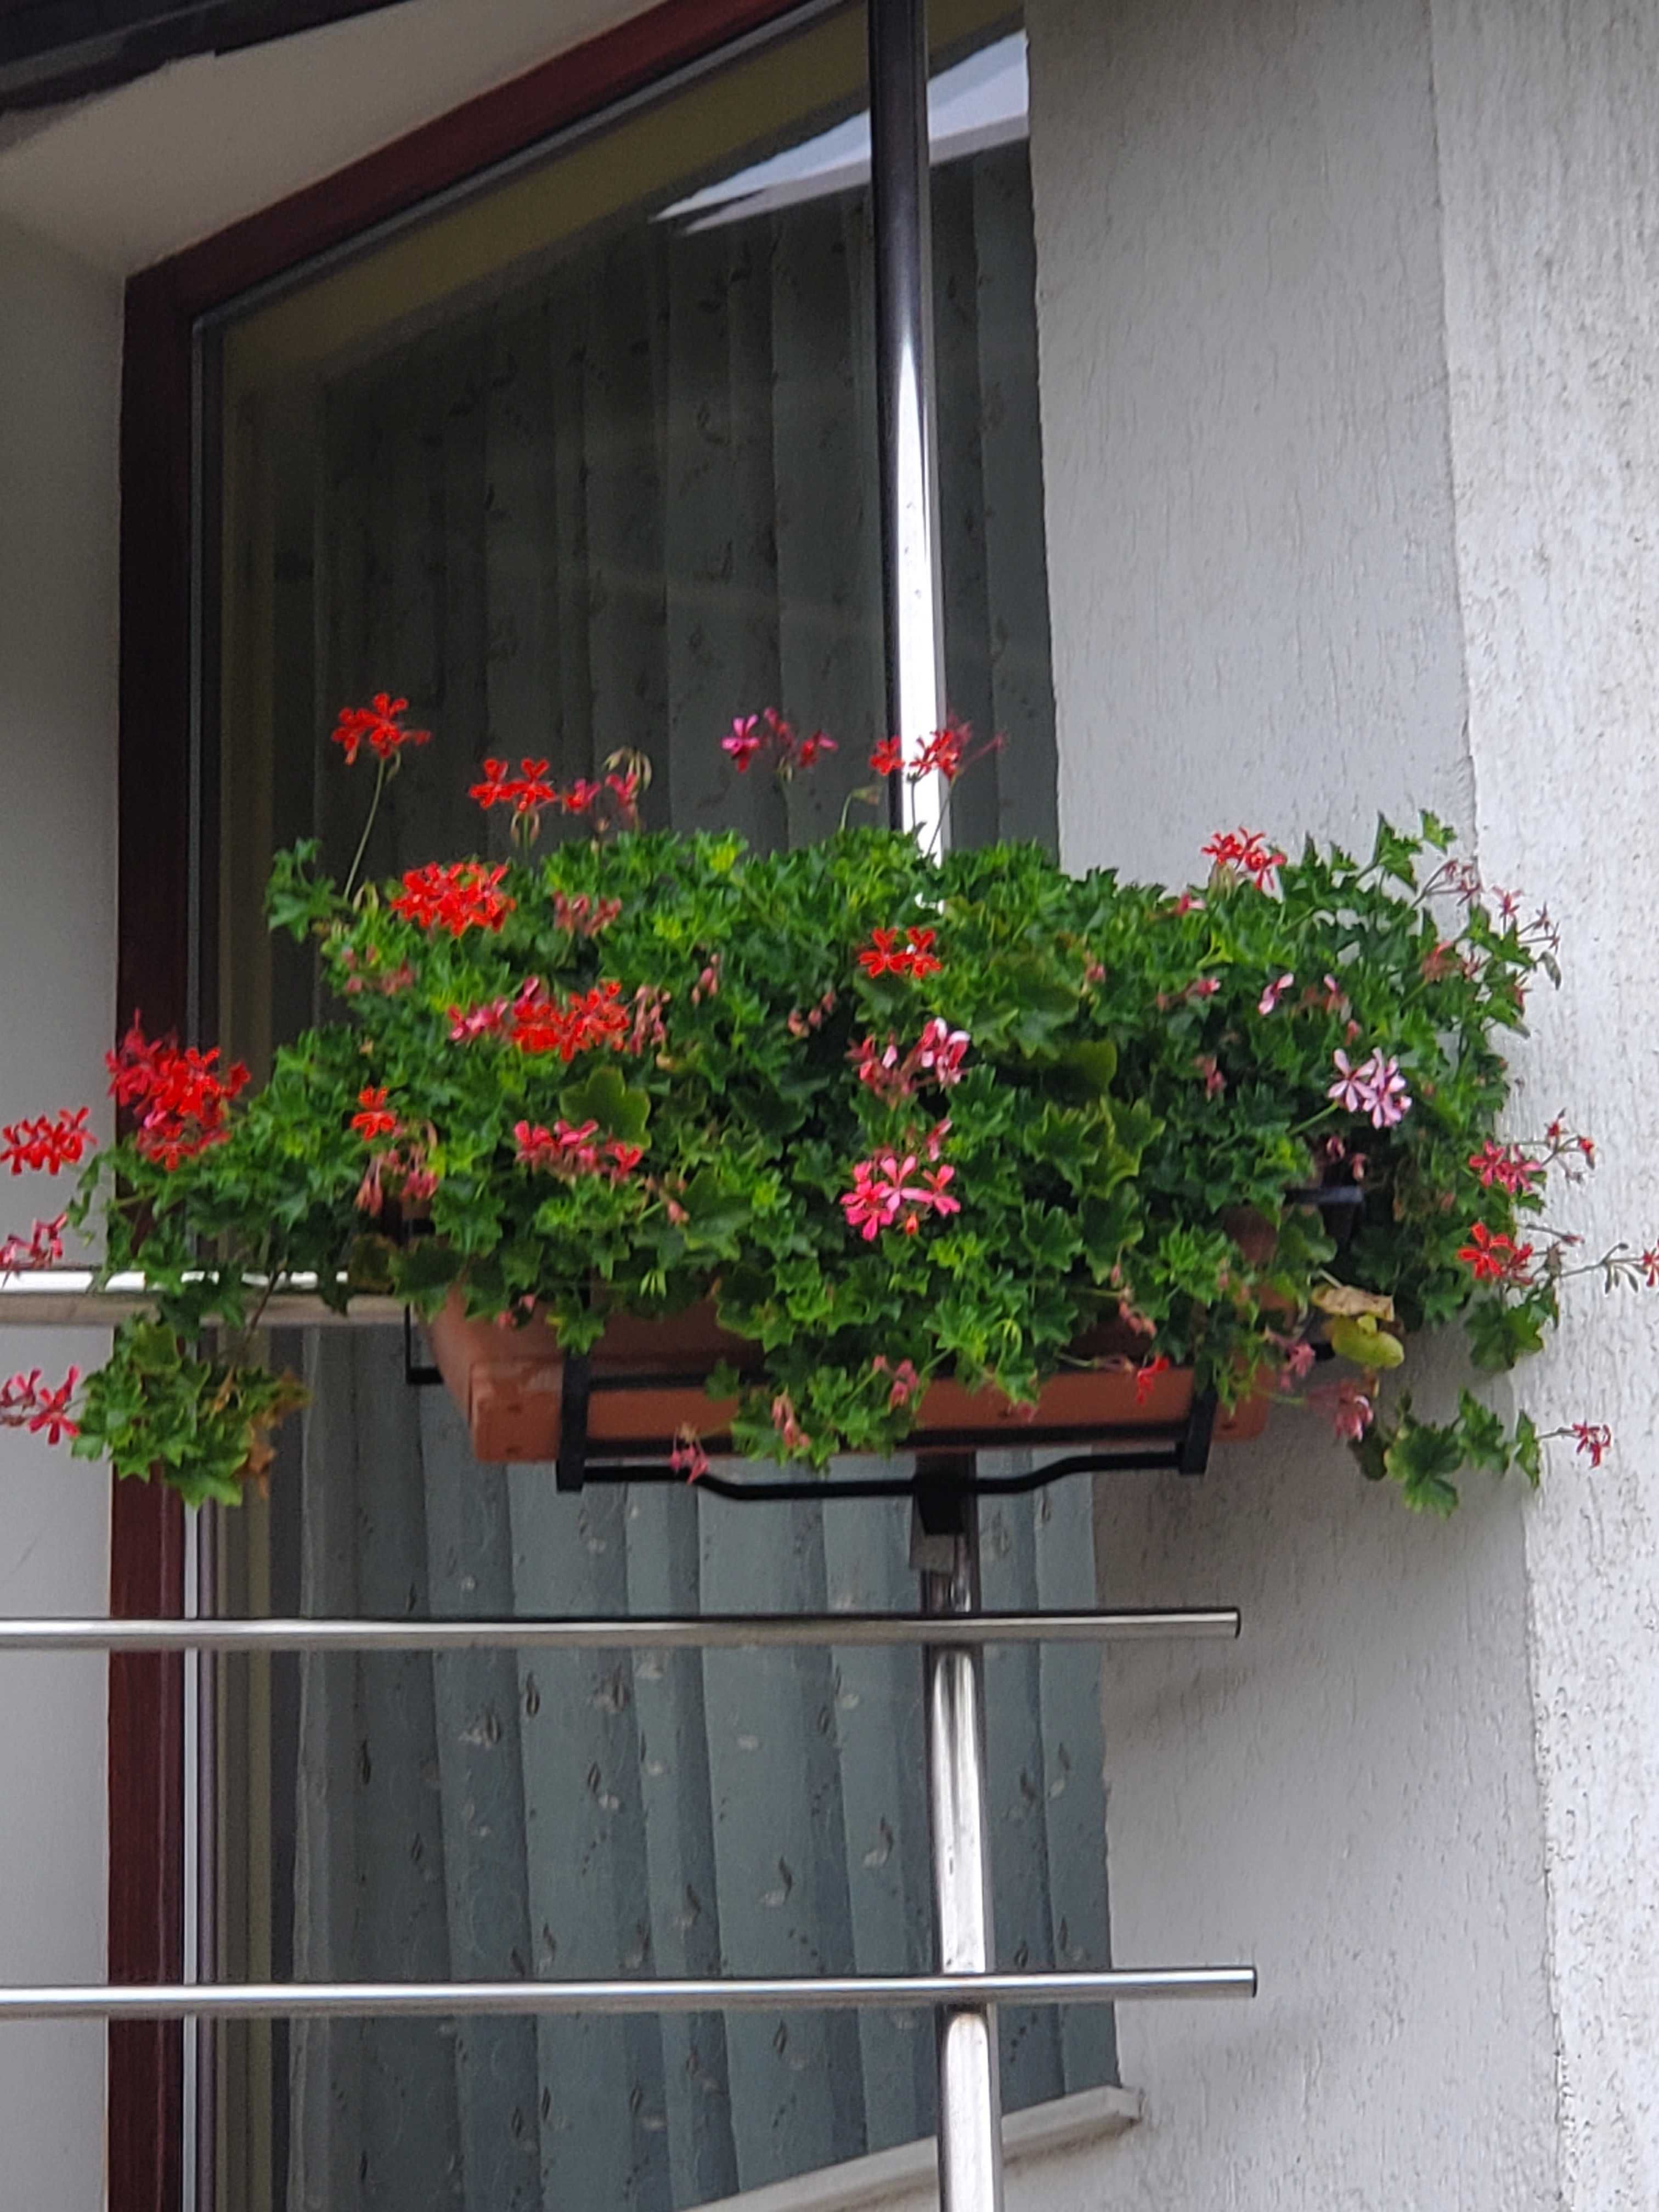 Muscate tiroleze rosii in jardiniere de 60 cm cu suport metalic.